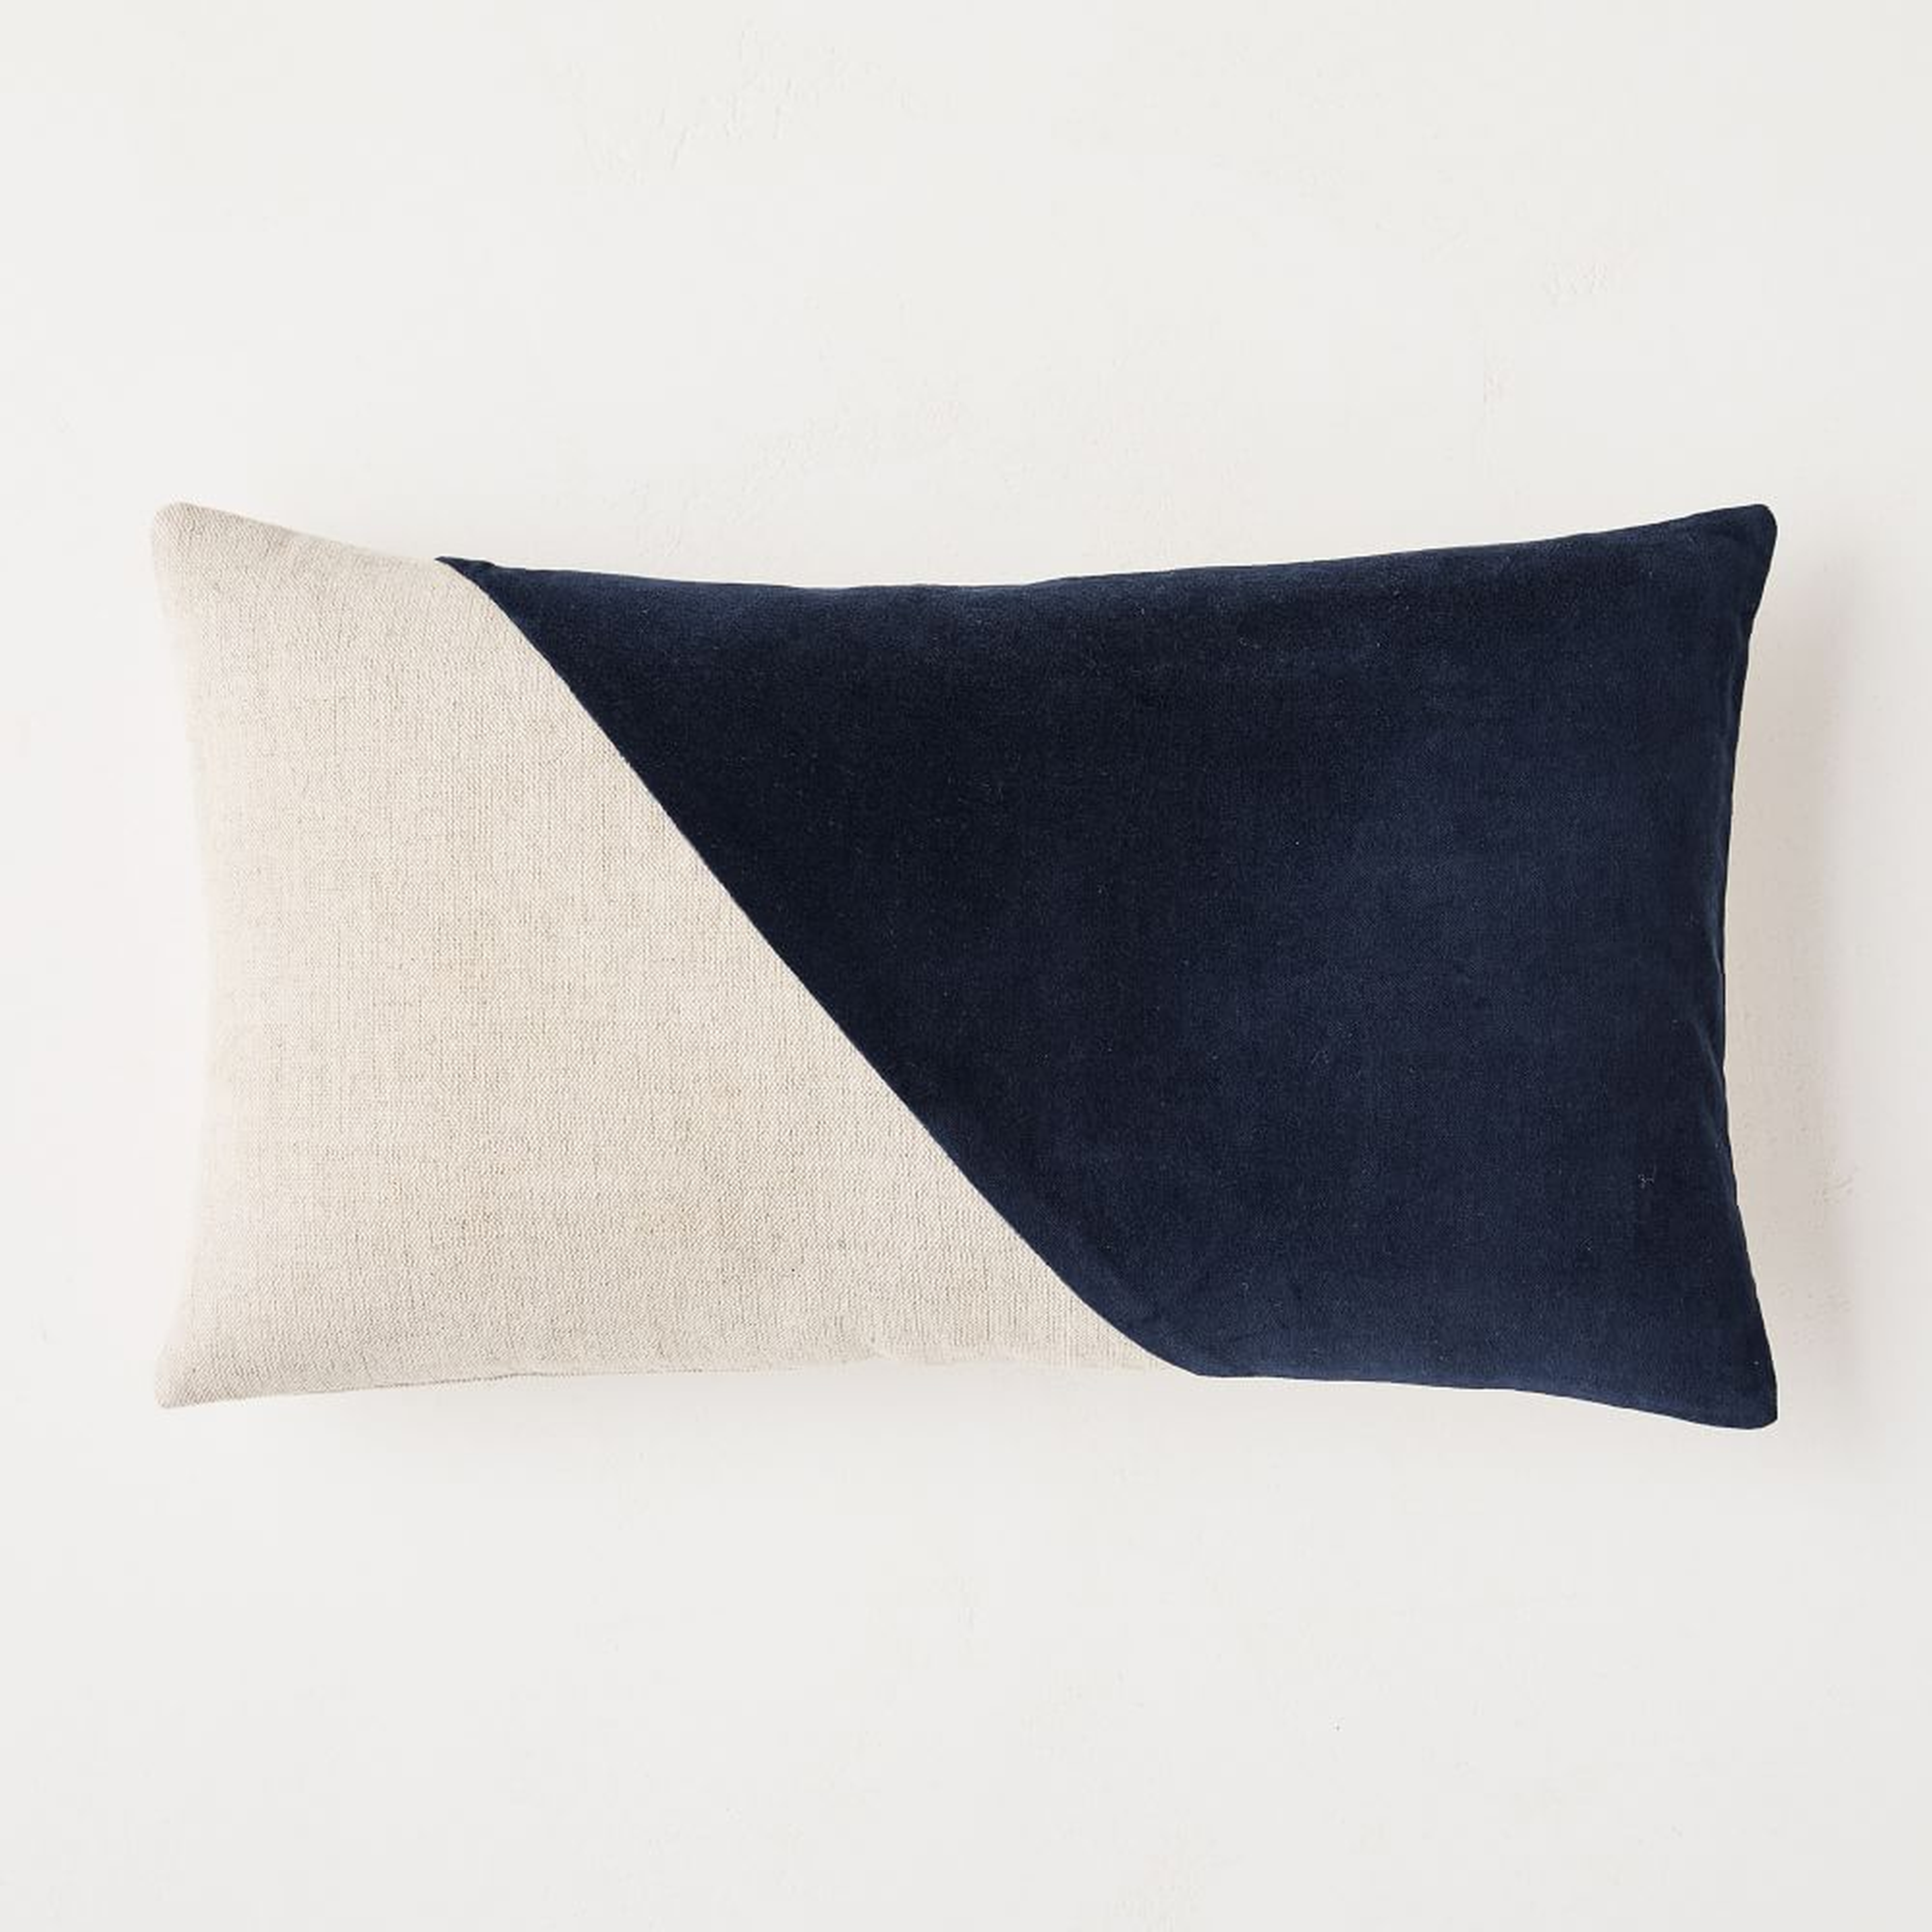 Cotton Linen + Velvet Lumbar Pillow Cover, 12"x21", Midnight - West Elm